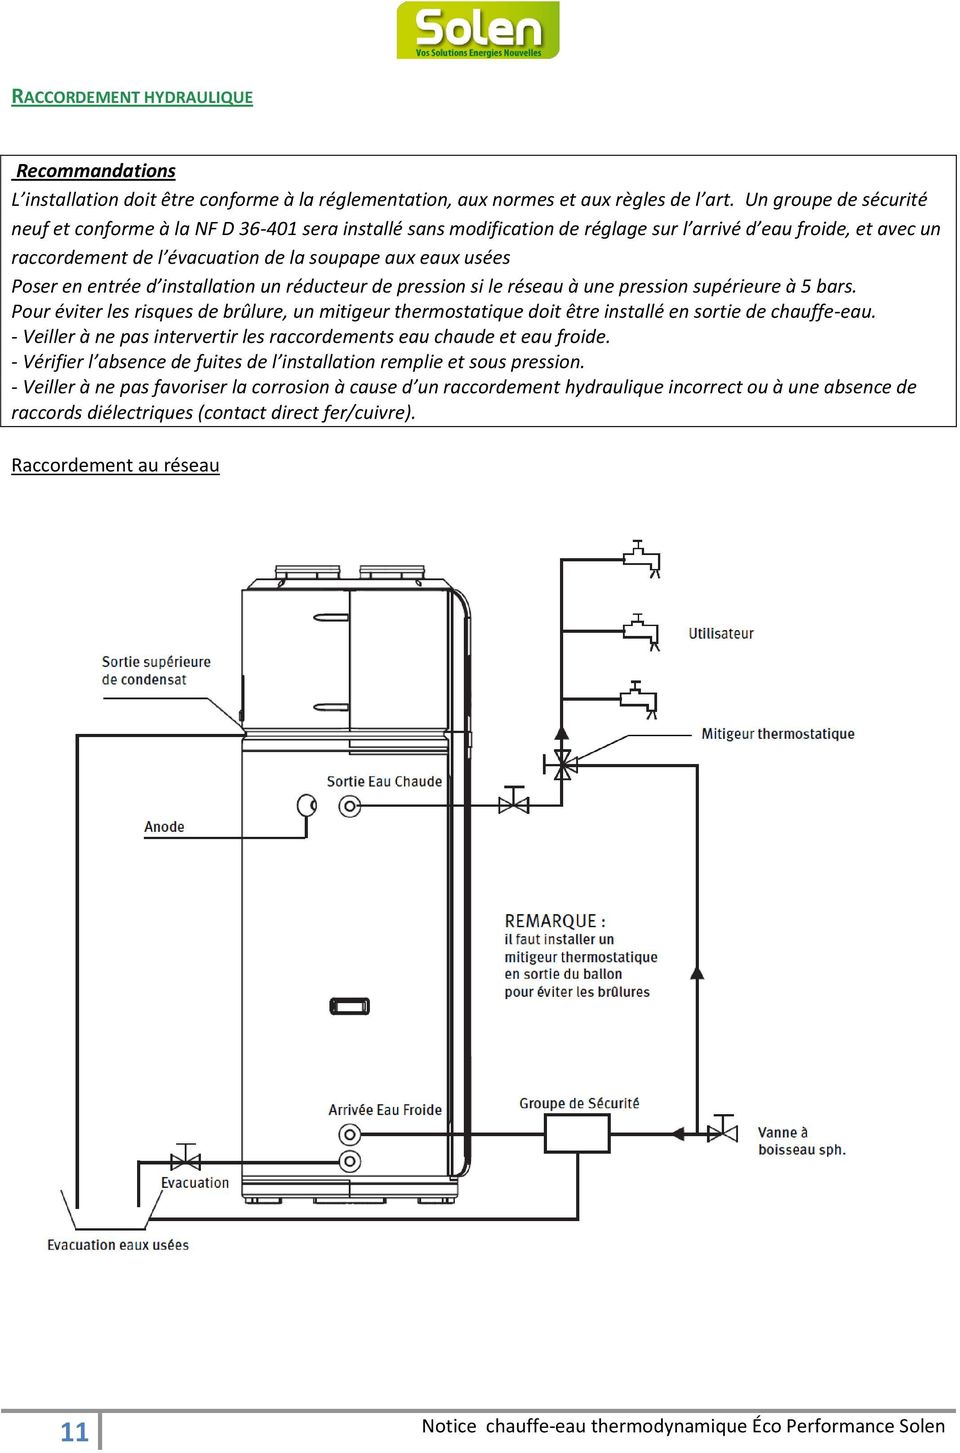 Poser en entrée d installation un réducteur de pression si le réseau à une pression supérieure à 5 bars.